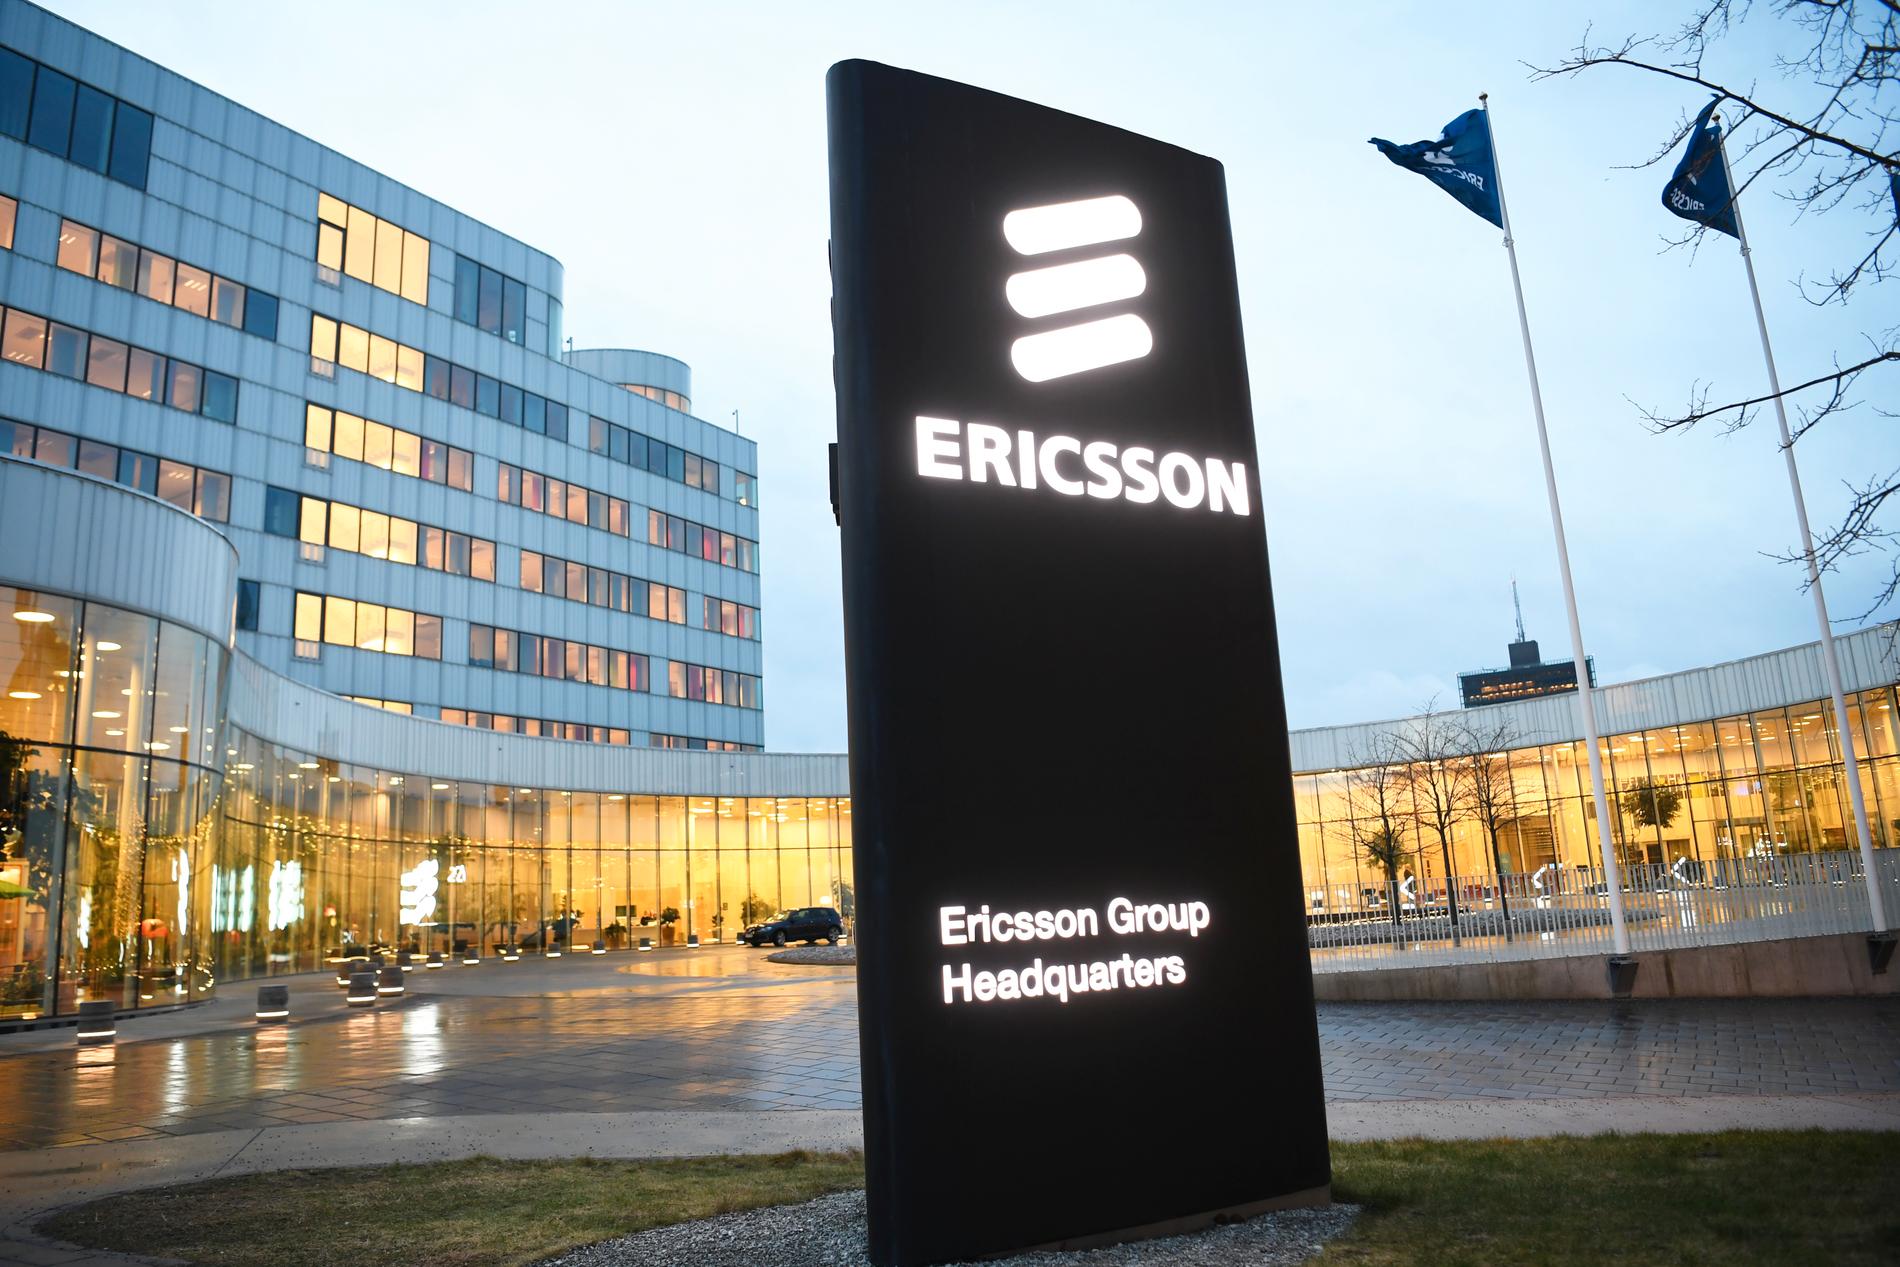 Telekomkoncernen Ericssons mutaffärer i Irak kan vara ett folkrättsbrott, anser två advokater. Arkivbild.